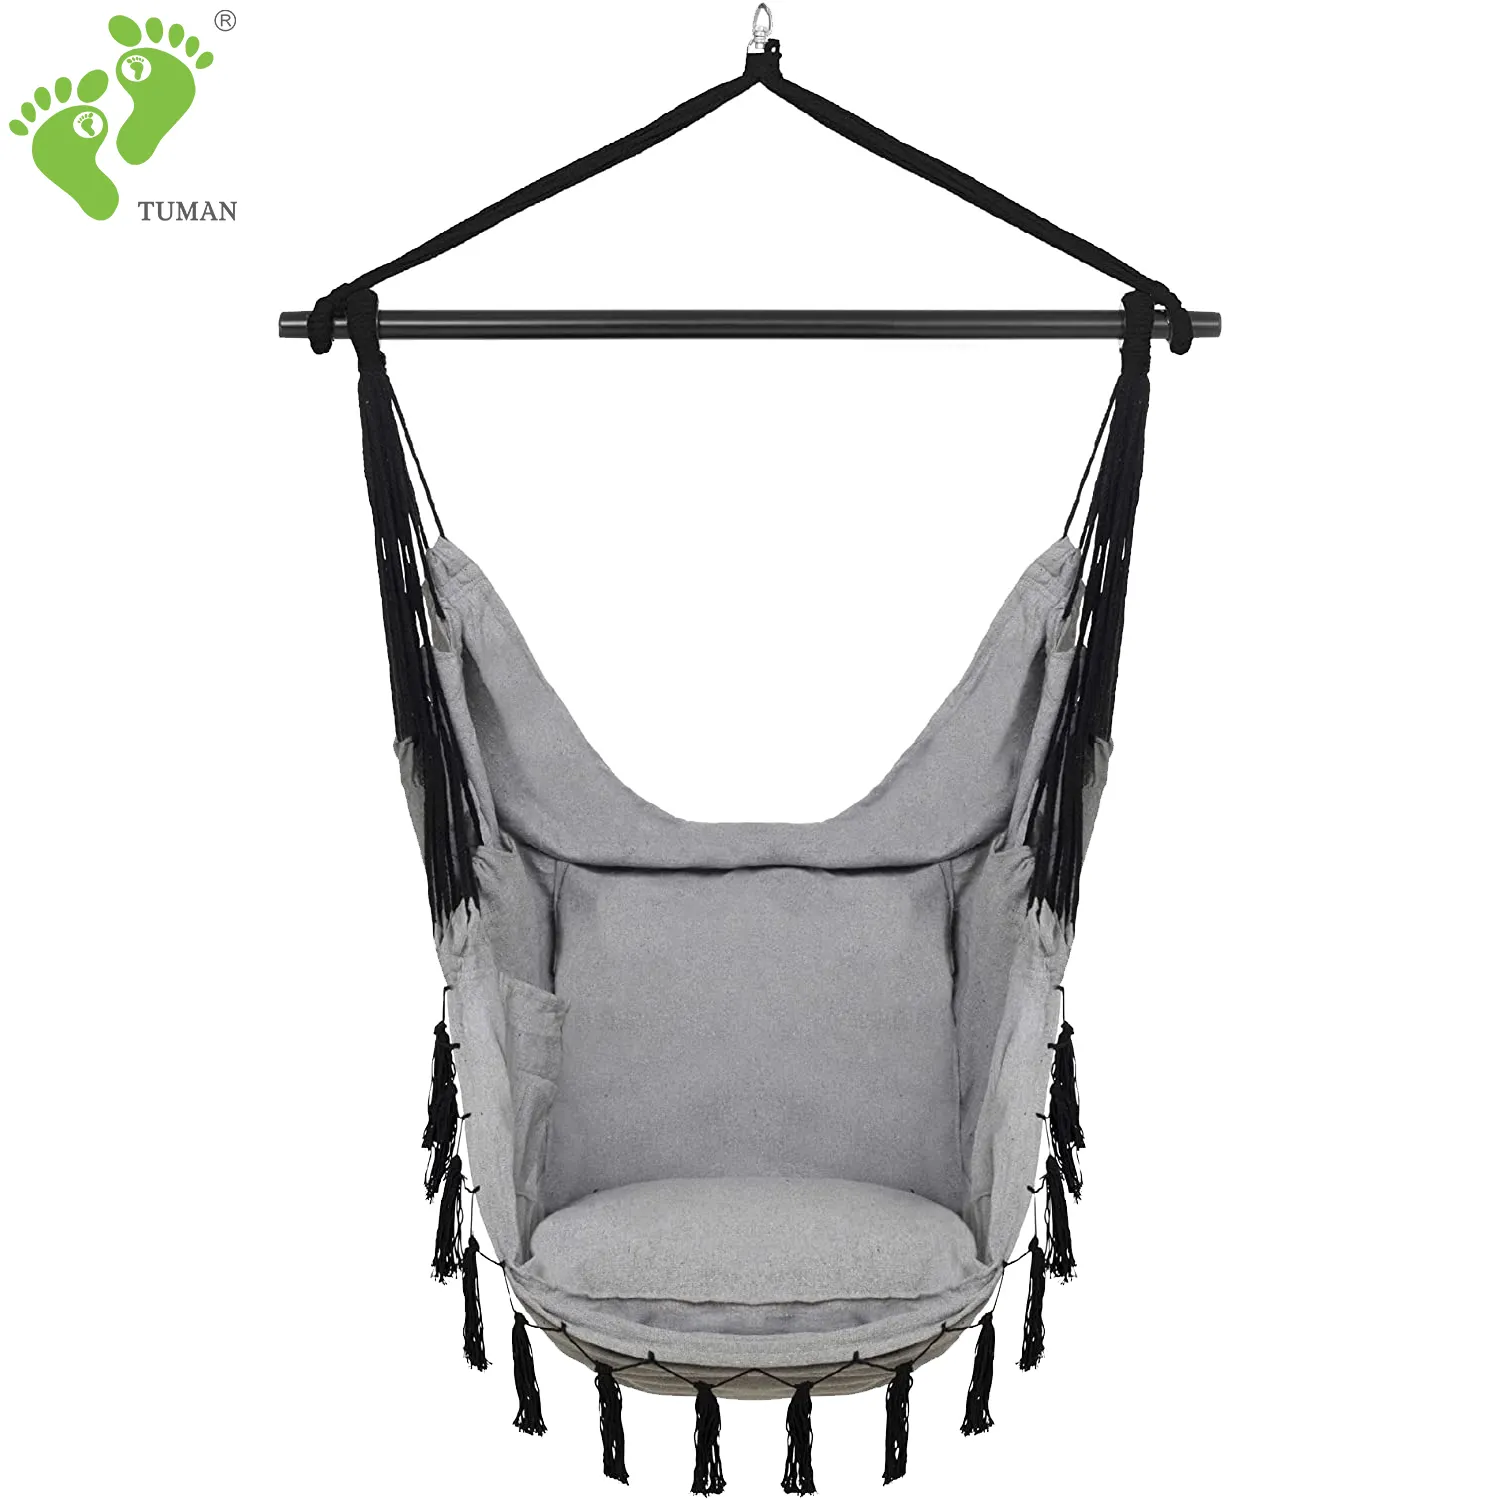 Alta qualità del sacchetto interno giardino per il tempo libero in tela sedia con cuscini spessi robusto soggiorno macramè sedia amaca